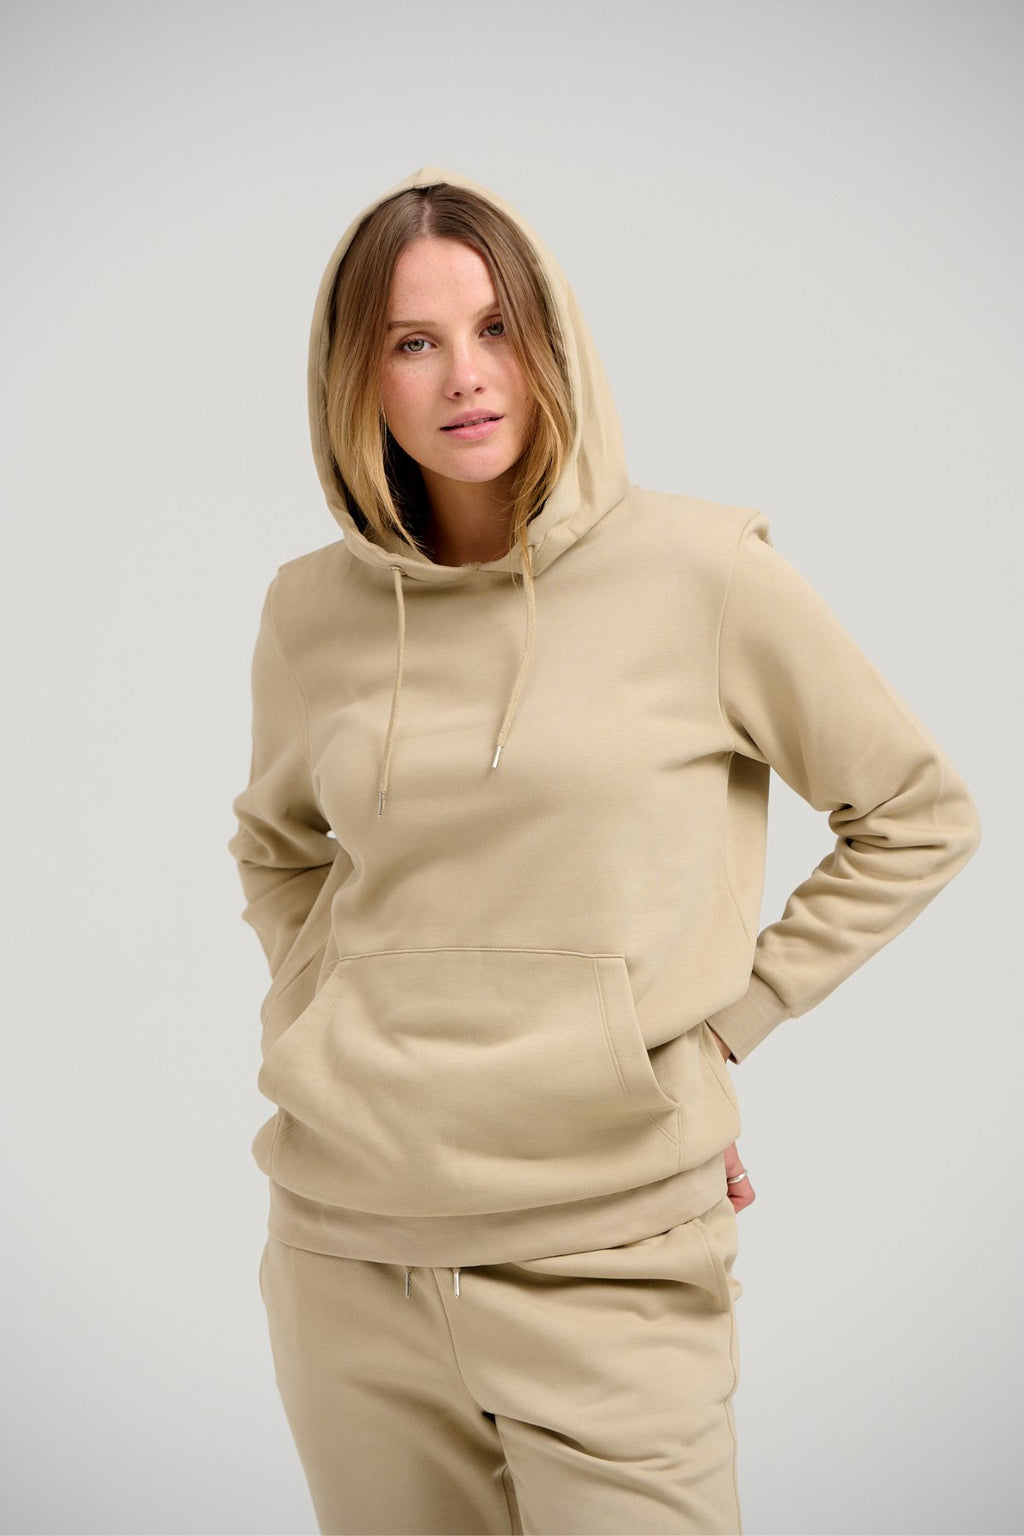 Basic Sweatsuit with Hoodie (Dark Beige) - Package Deal (Women)